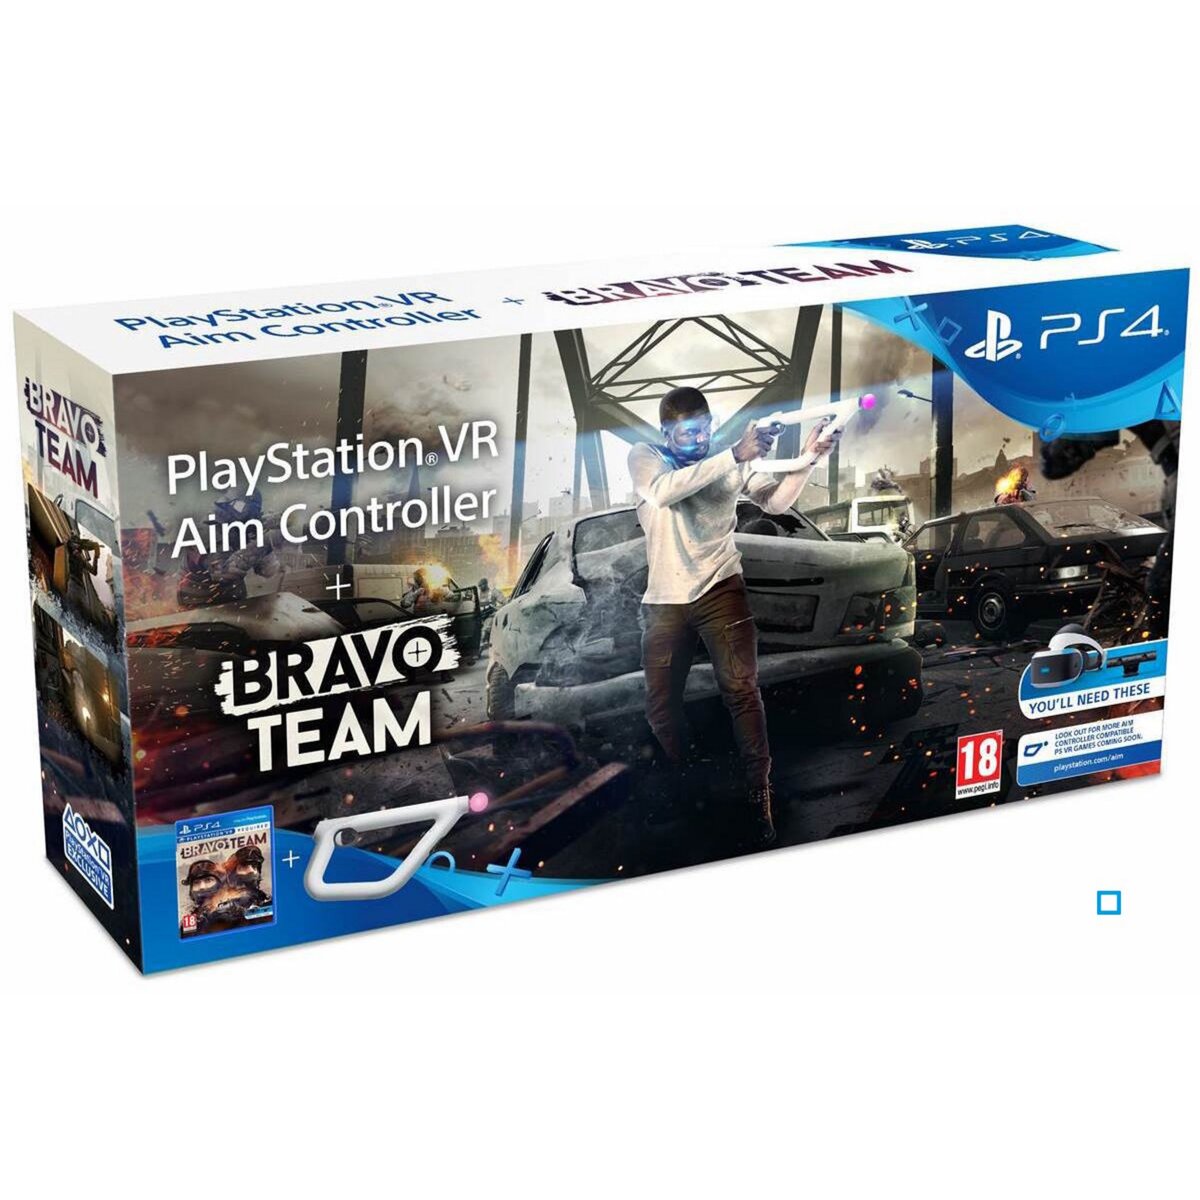 Bravo Team + Aim Controller + Qui es-tu ? PS4